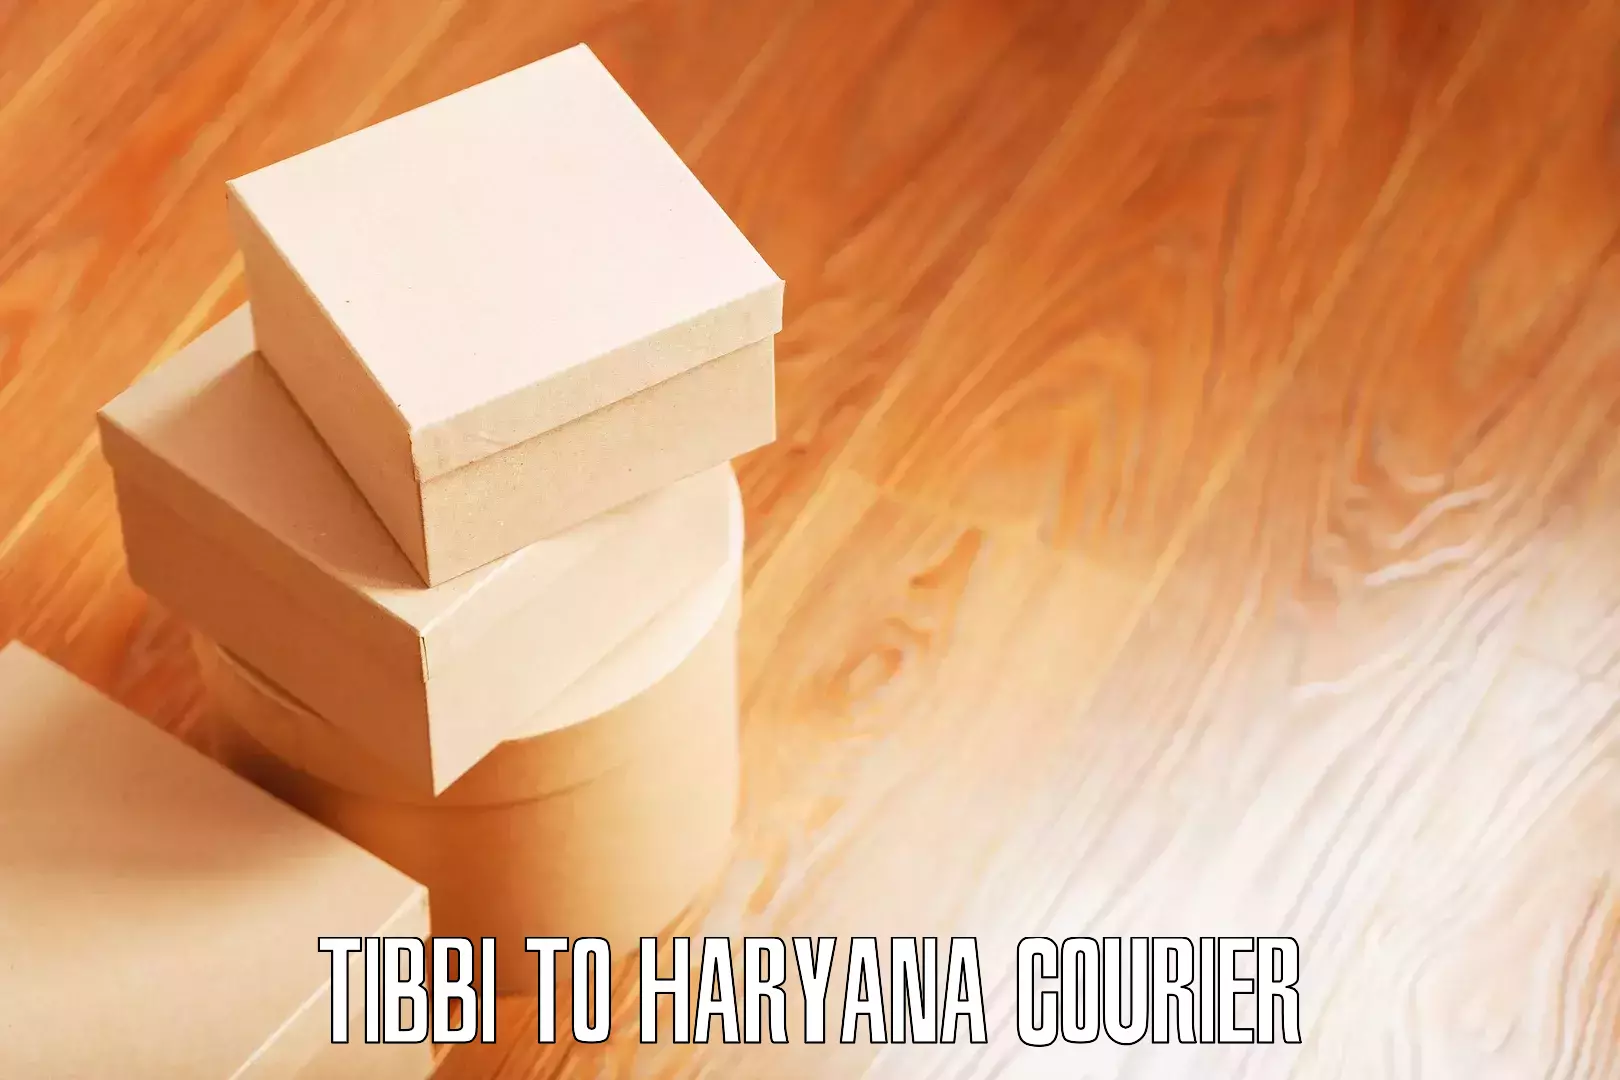 Specialized moving company Tibbi to Haryana